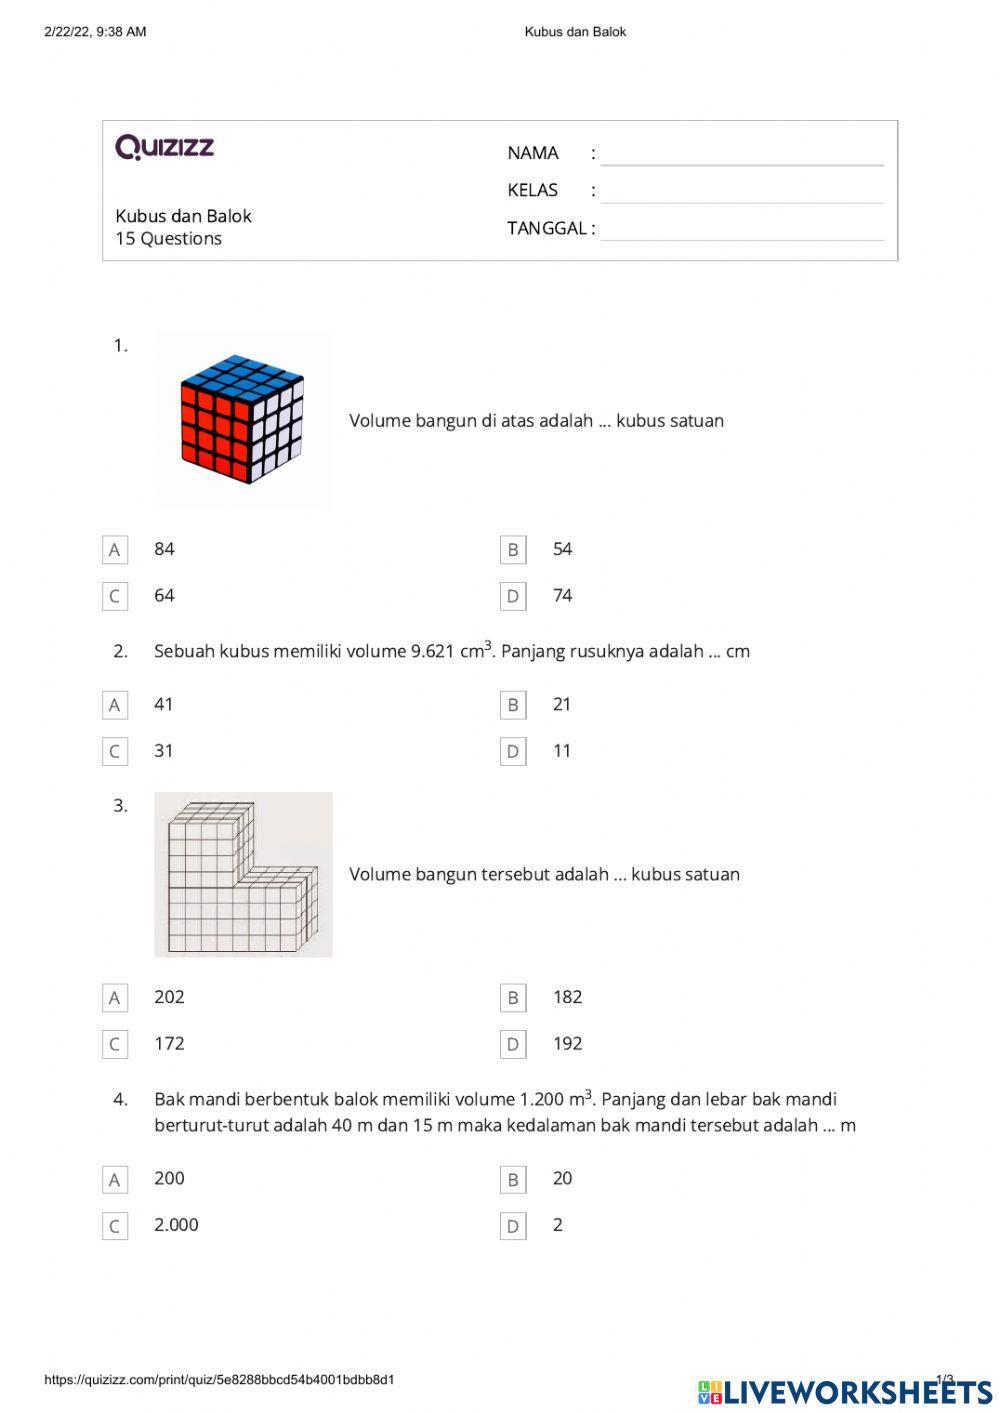 Matematika Volume kubus dan balok dengan mengukur kubus satuan